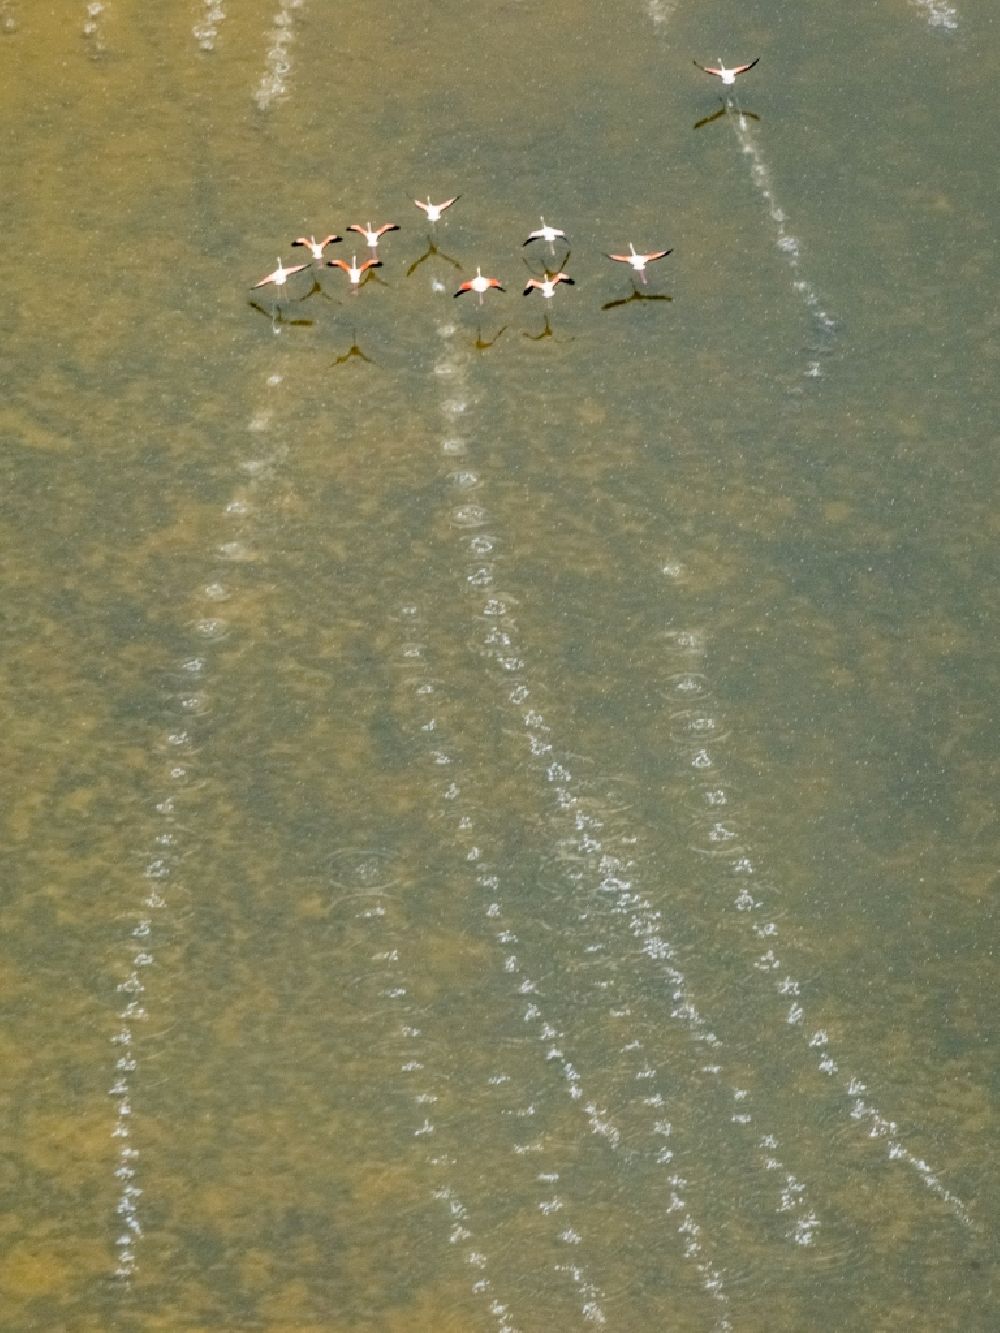 Luftbild Santanyi - Vogel- Formation von Flamingos im Flug in Santanyi in Balearische Insel Mallorca, Spanien